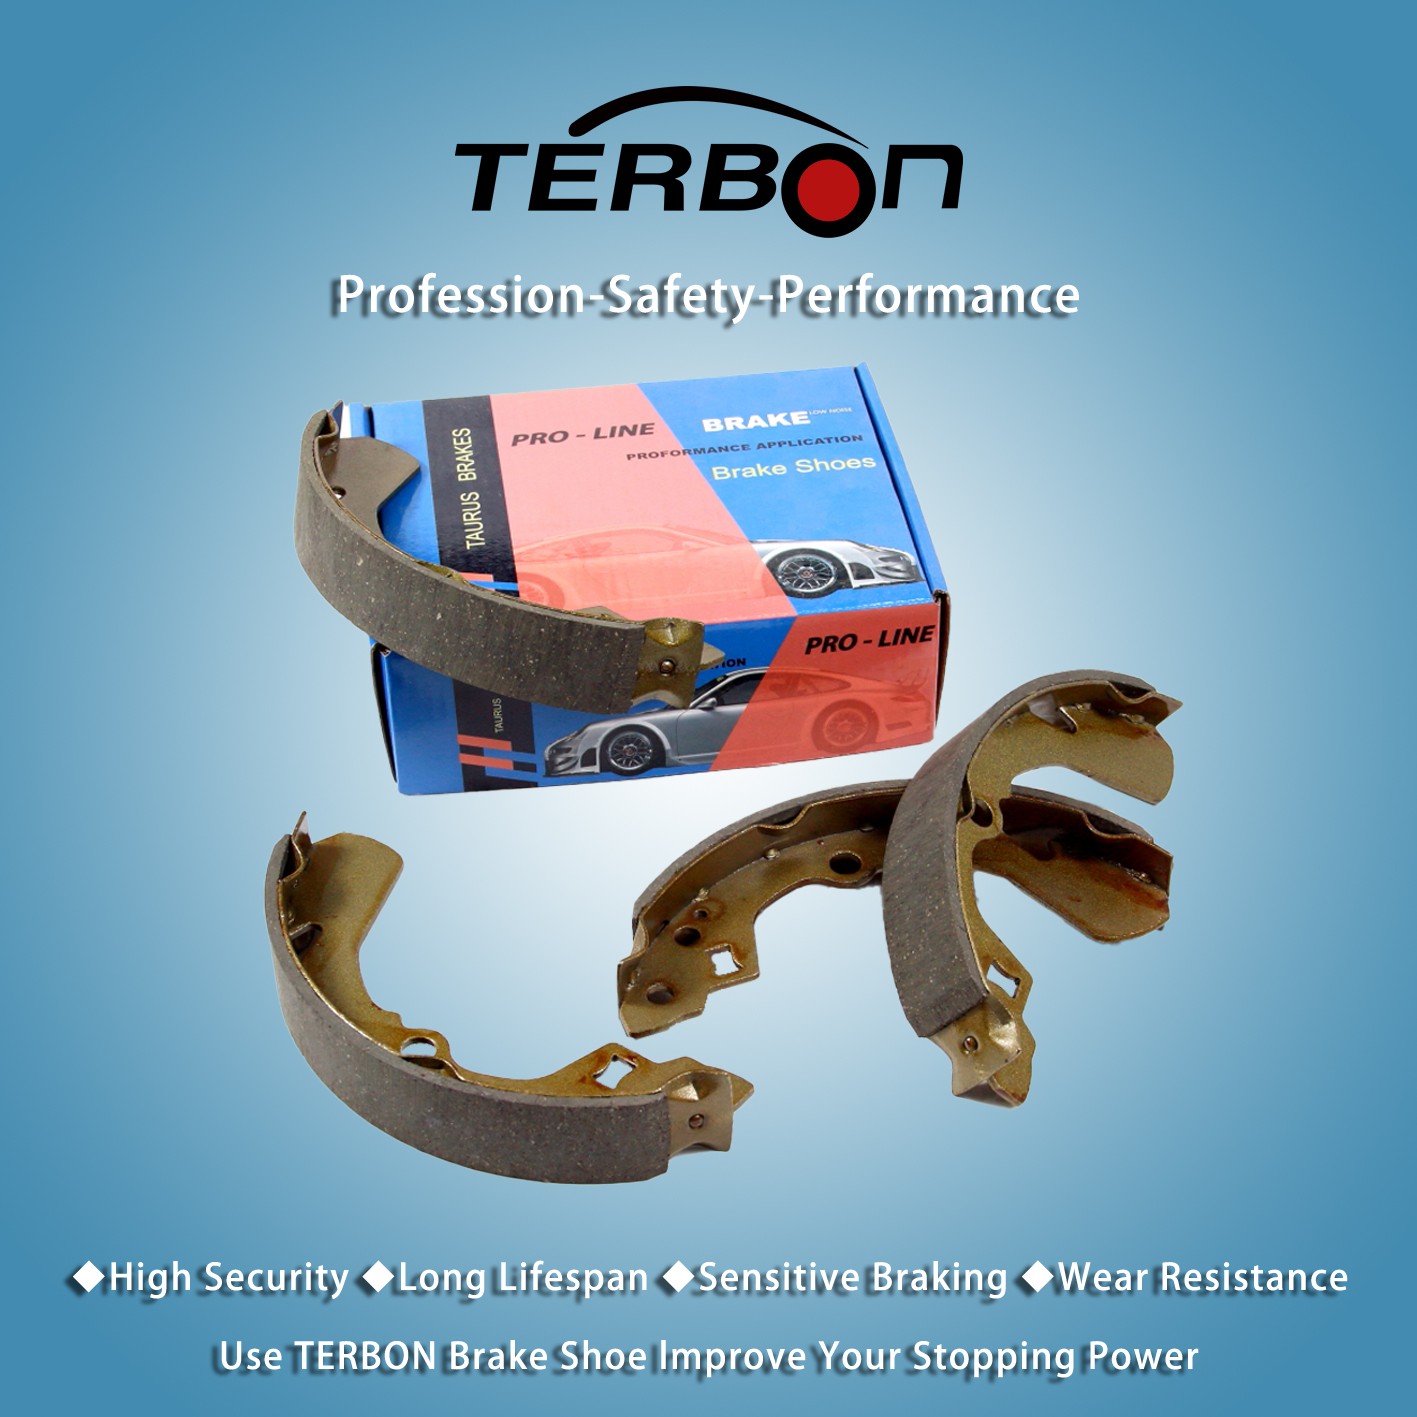 تطلق Terbon أحذية فرامل جديدة عالية الأداء للمحور الأمامي لتحسين أداء فرملة السيارة